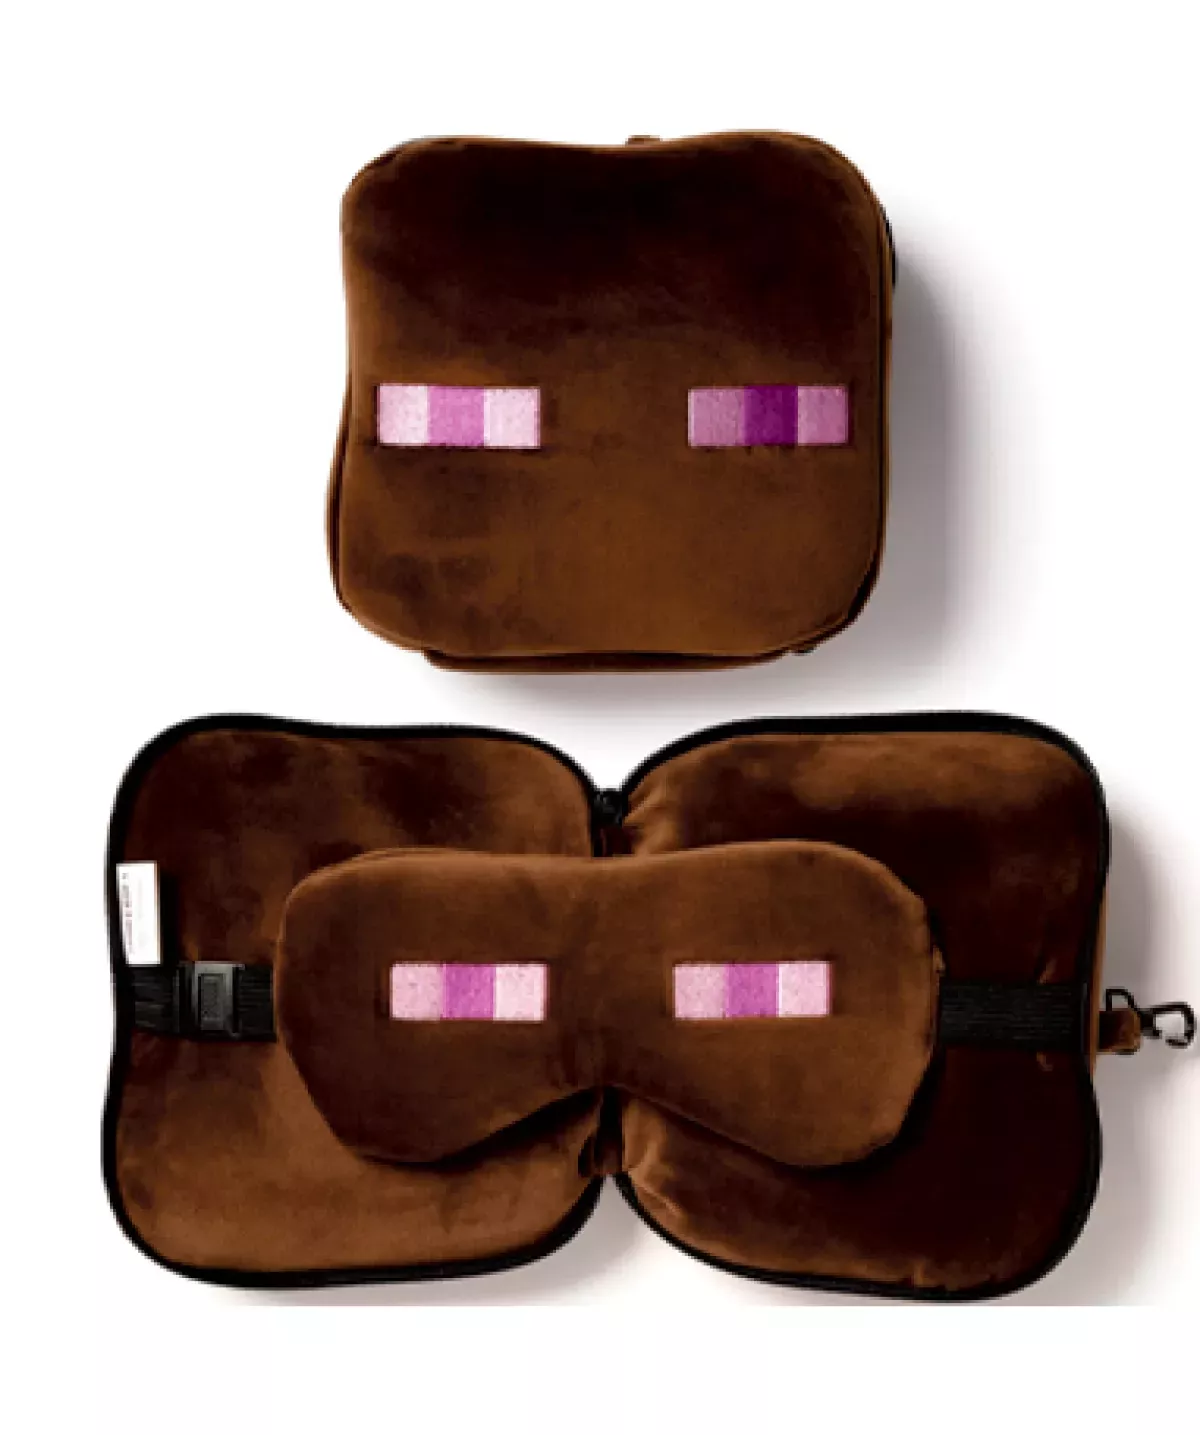 #2 - Minecraft rejsepude med lynlås og maske